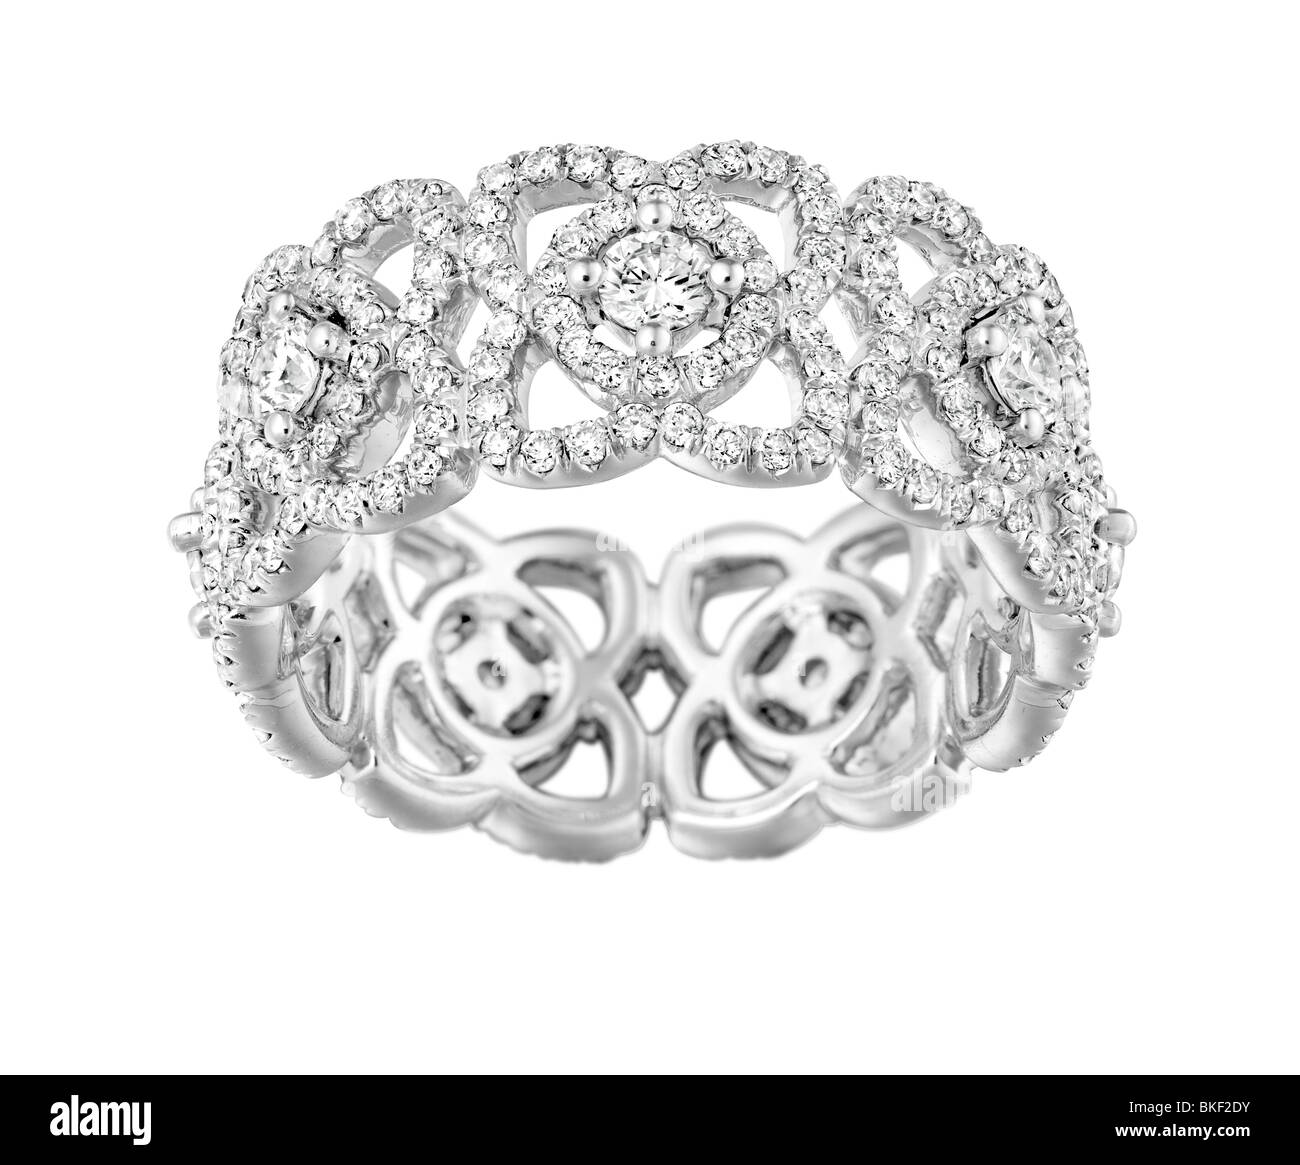 reich verzierte Ring Blume inspiriertes design Stockfoto